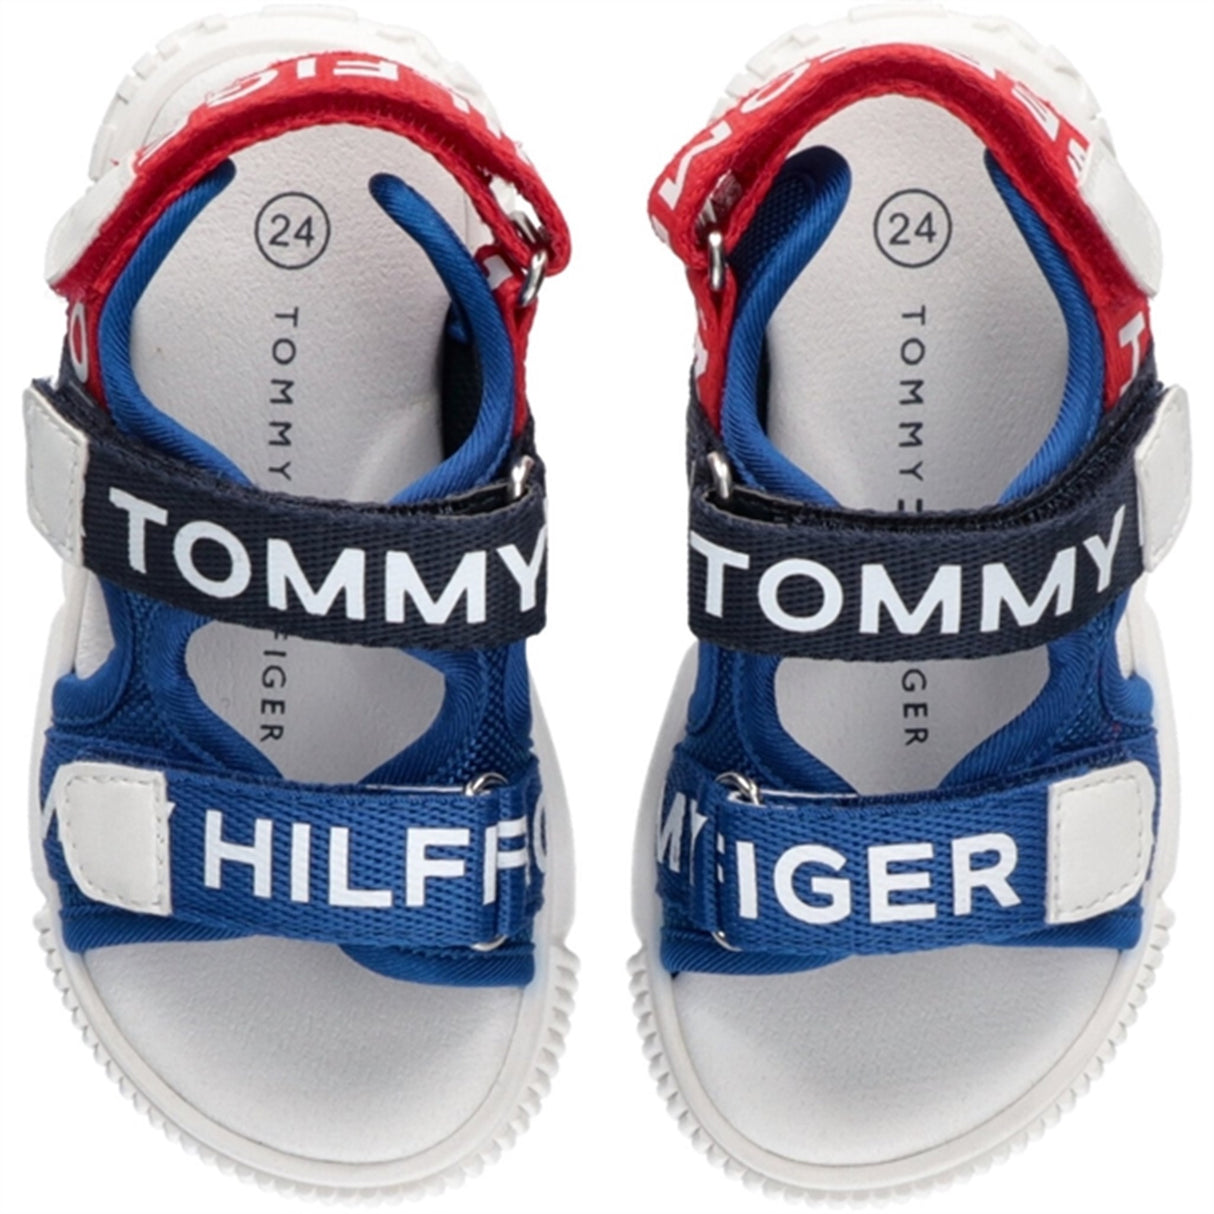 Tommy Hilfiger Logo Velcro Sandal Royal/Blue/Red 4